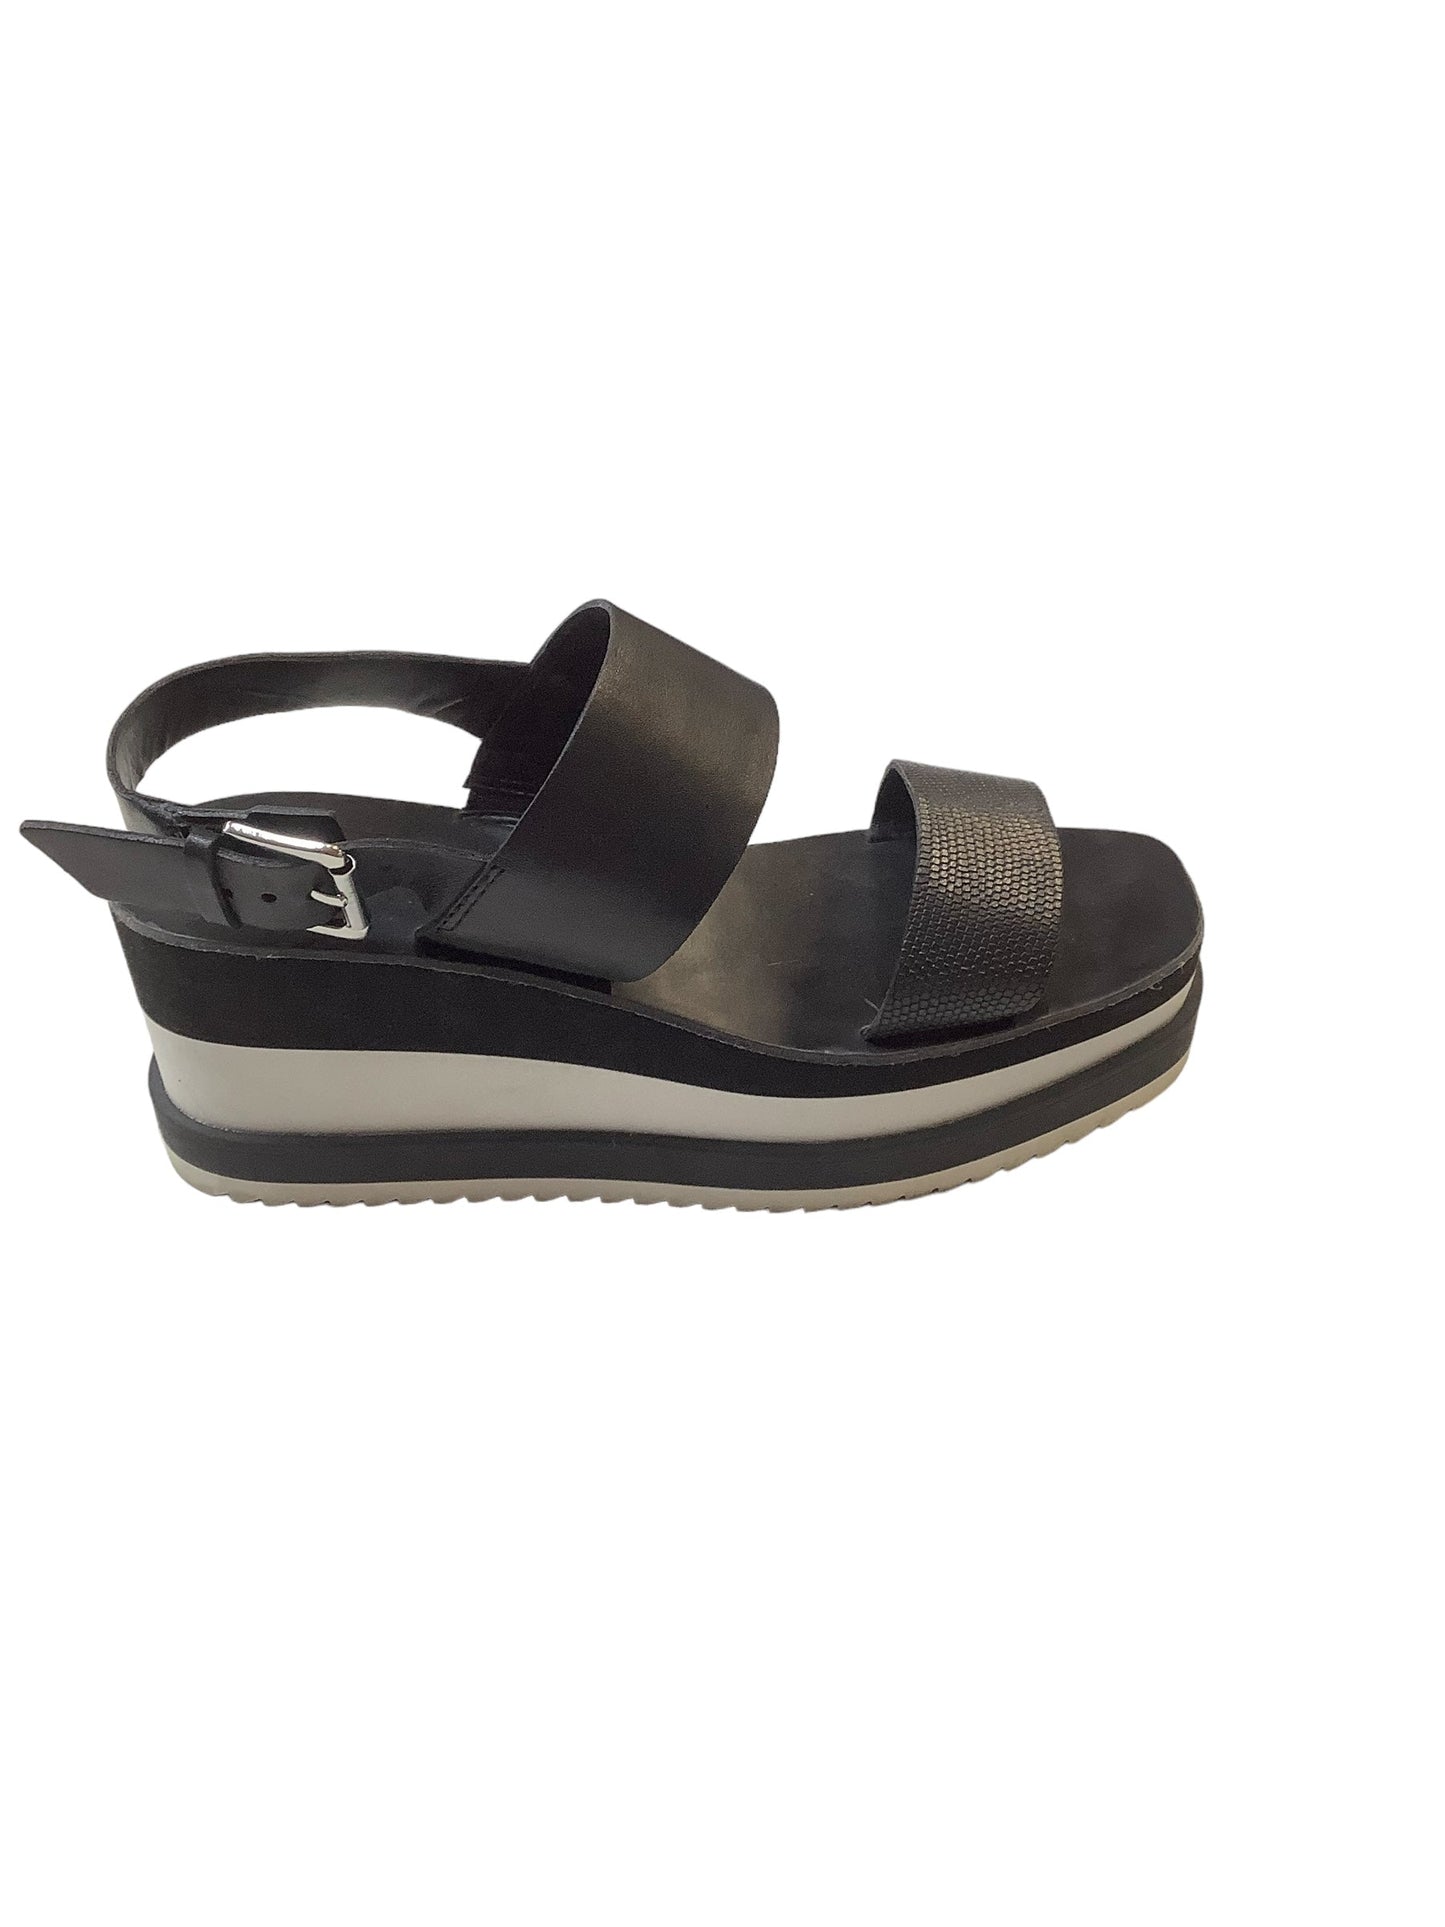 Black & White Sandals Flats Dolce Vita, Size 7